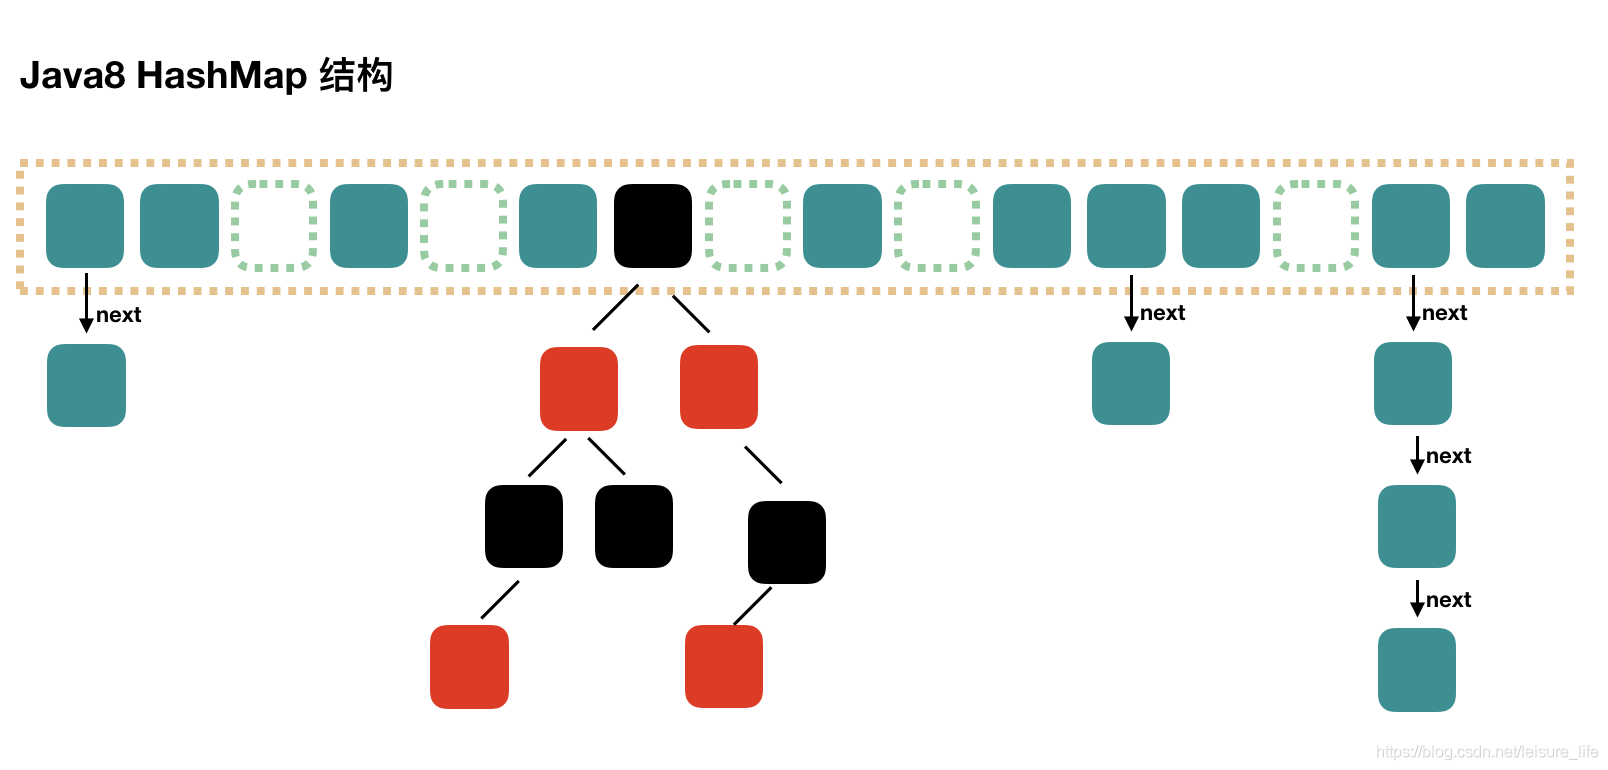 走读源码探究HashMap的树化时机以及红黑树的操作机制